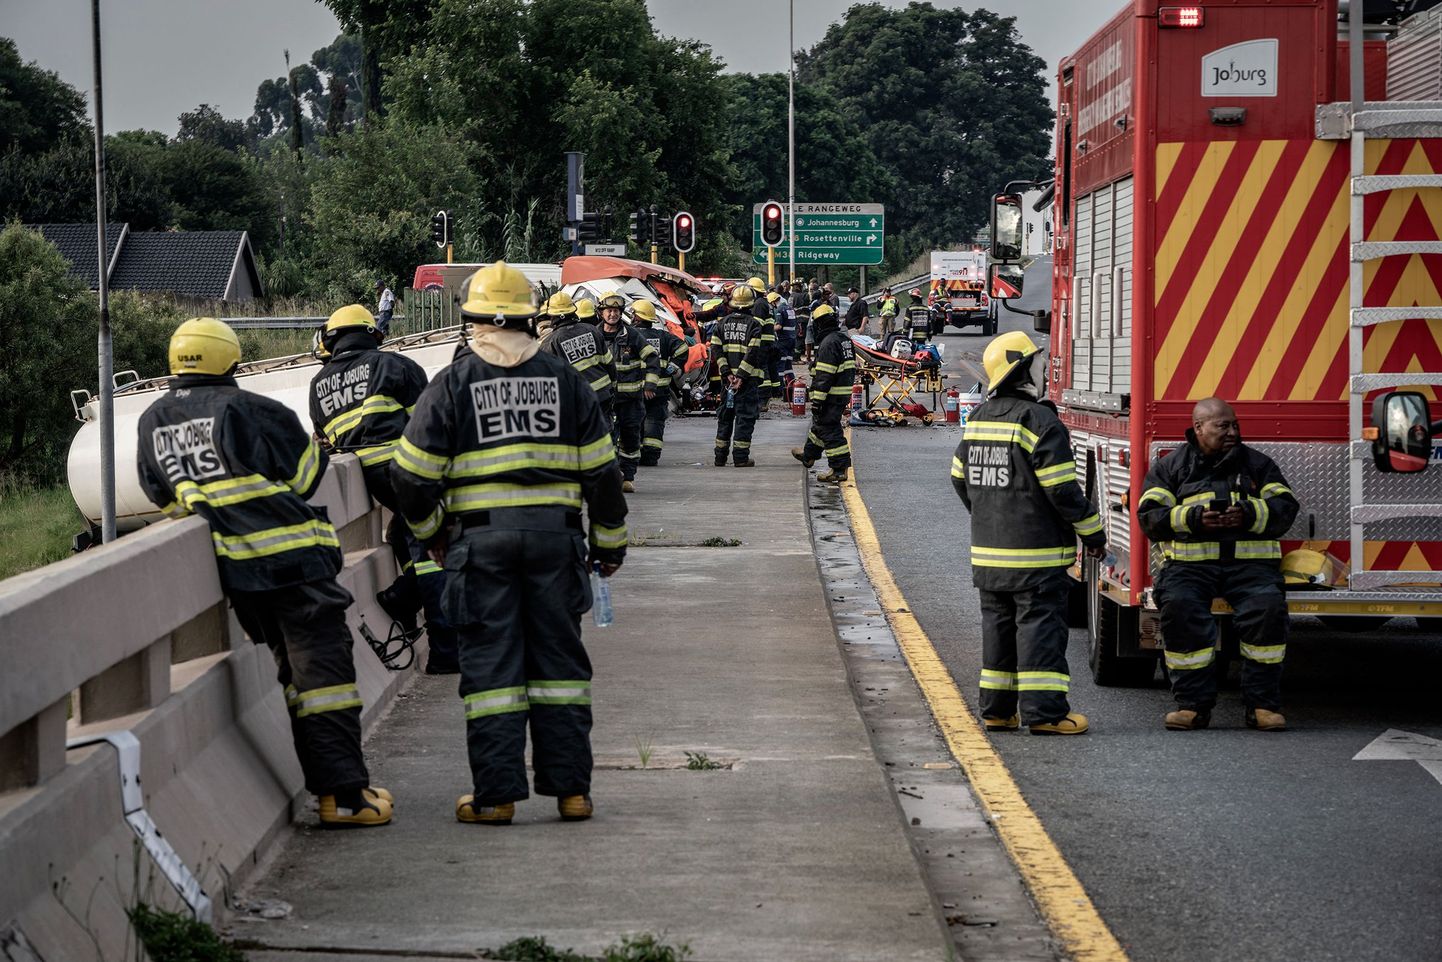 Lõuna-Aafrika parameedikud ja päästetöötajad liiklusõnnetus paigas. Foto on illustreeriv.